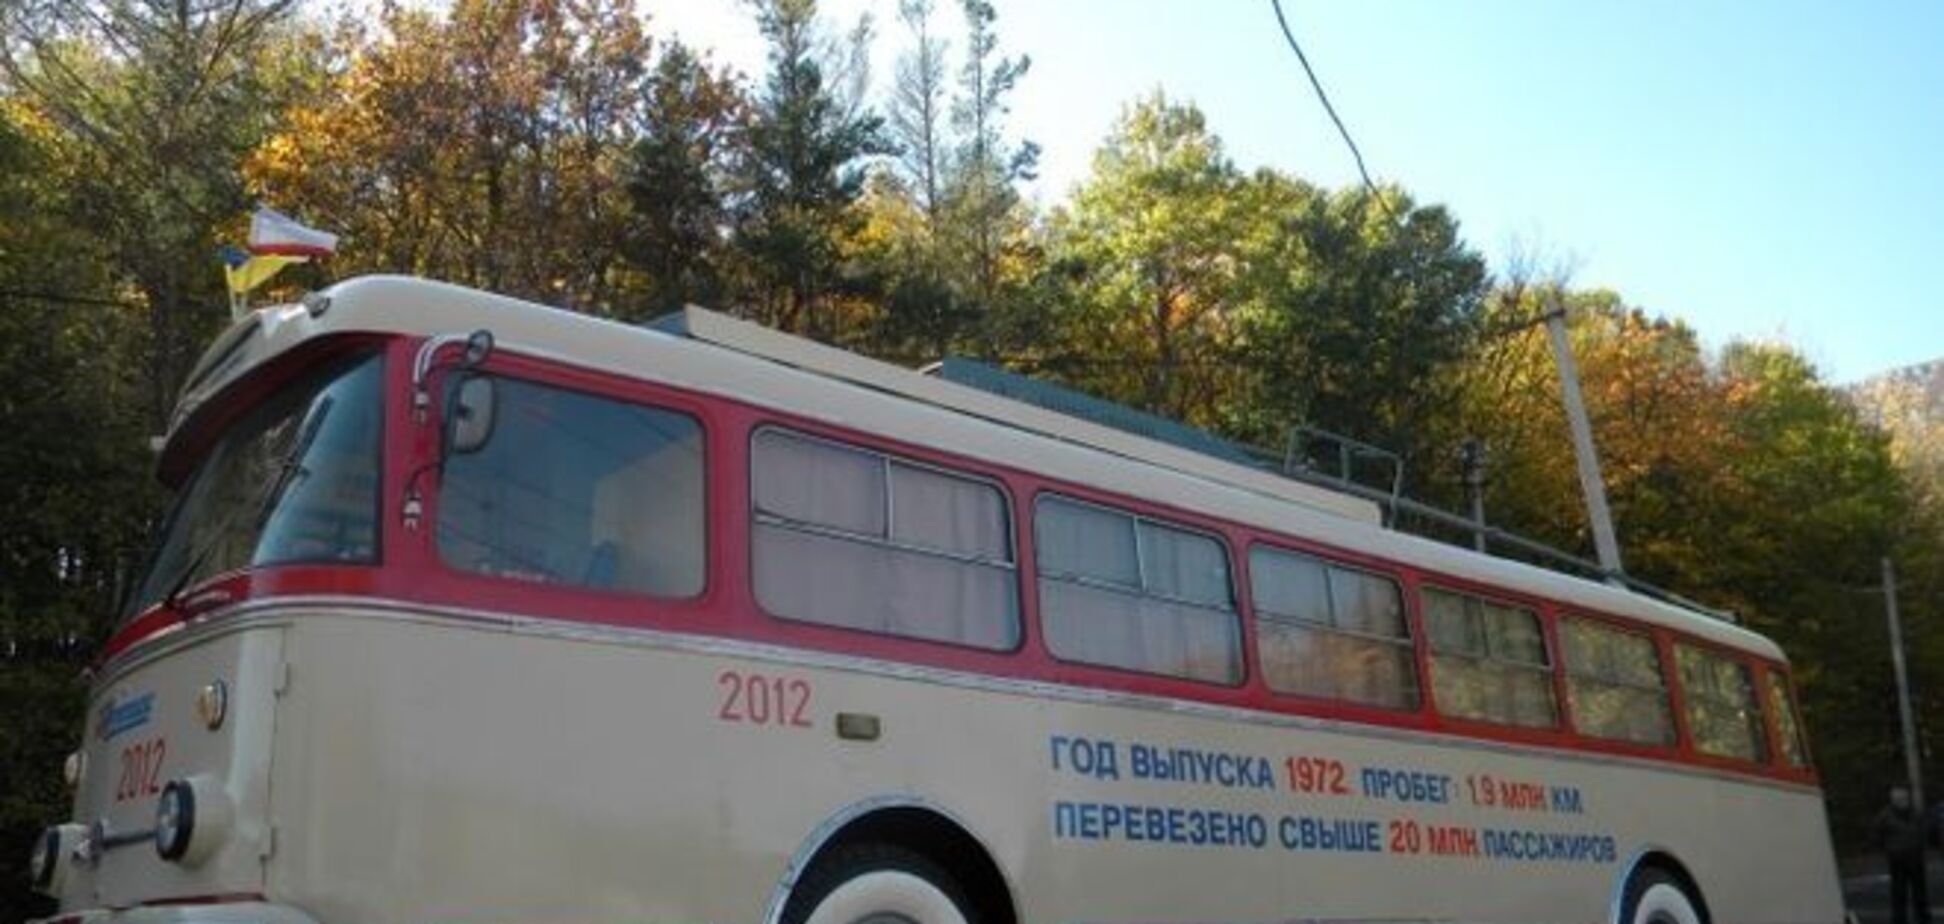 'Русский мир' уже не радует: в оккупированном Крыму троллейбусники объявили забастовку